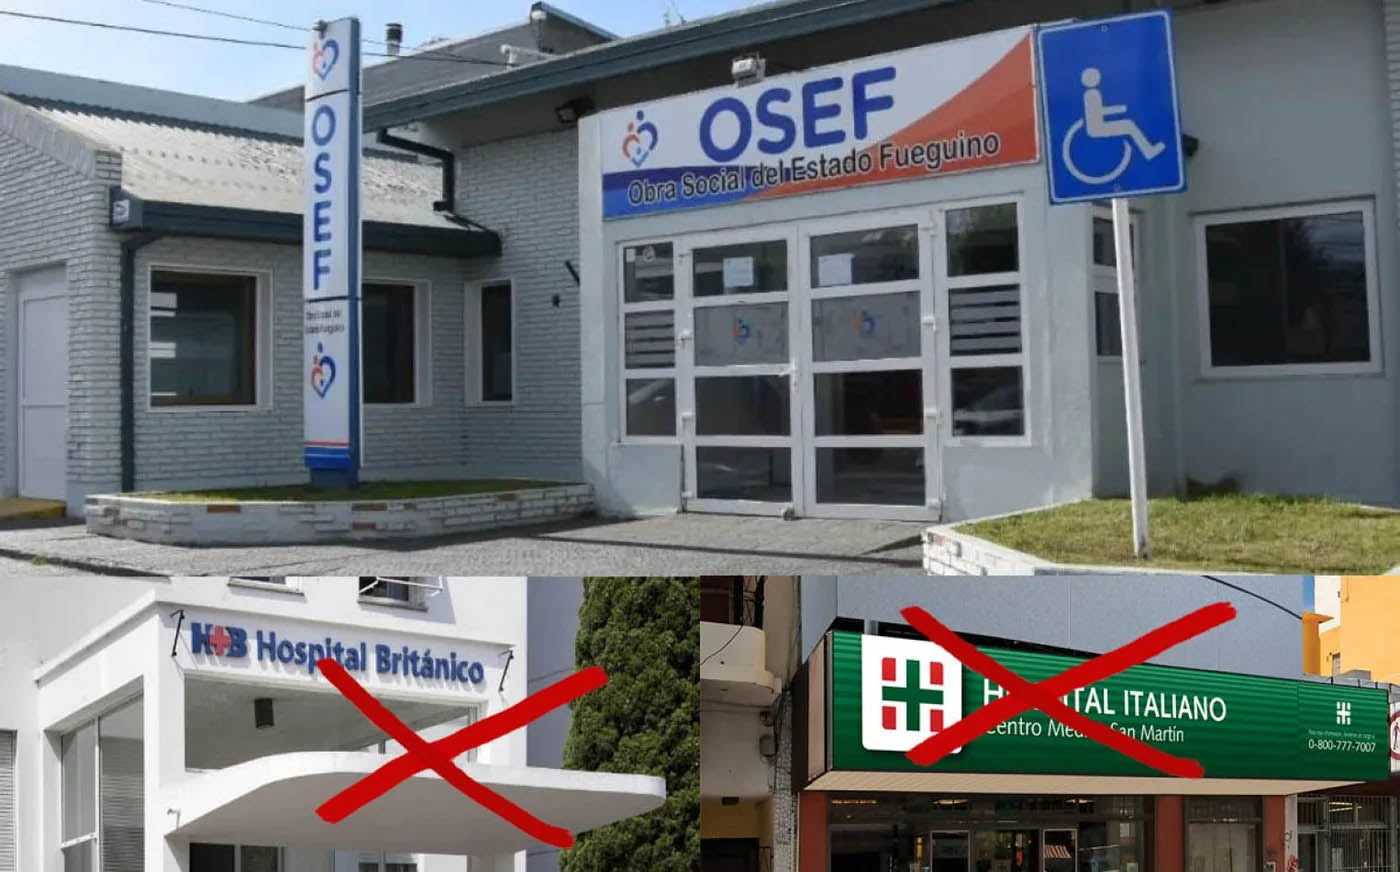 La Osef cortó todos los servicios de los hospitales Británico e Italiano